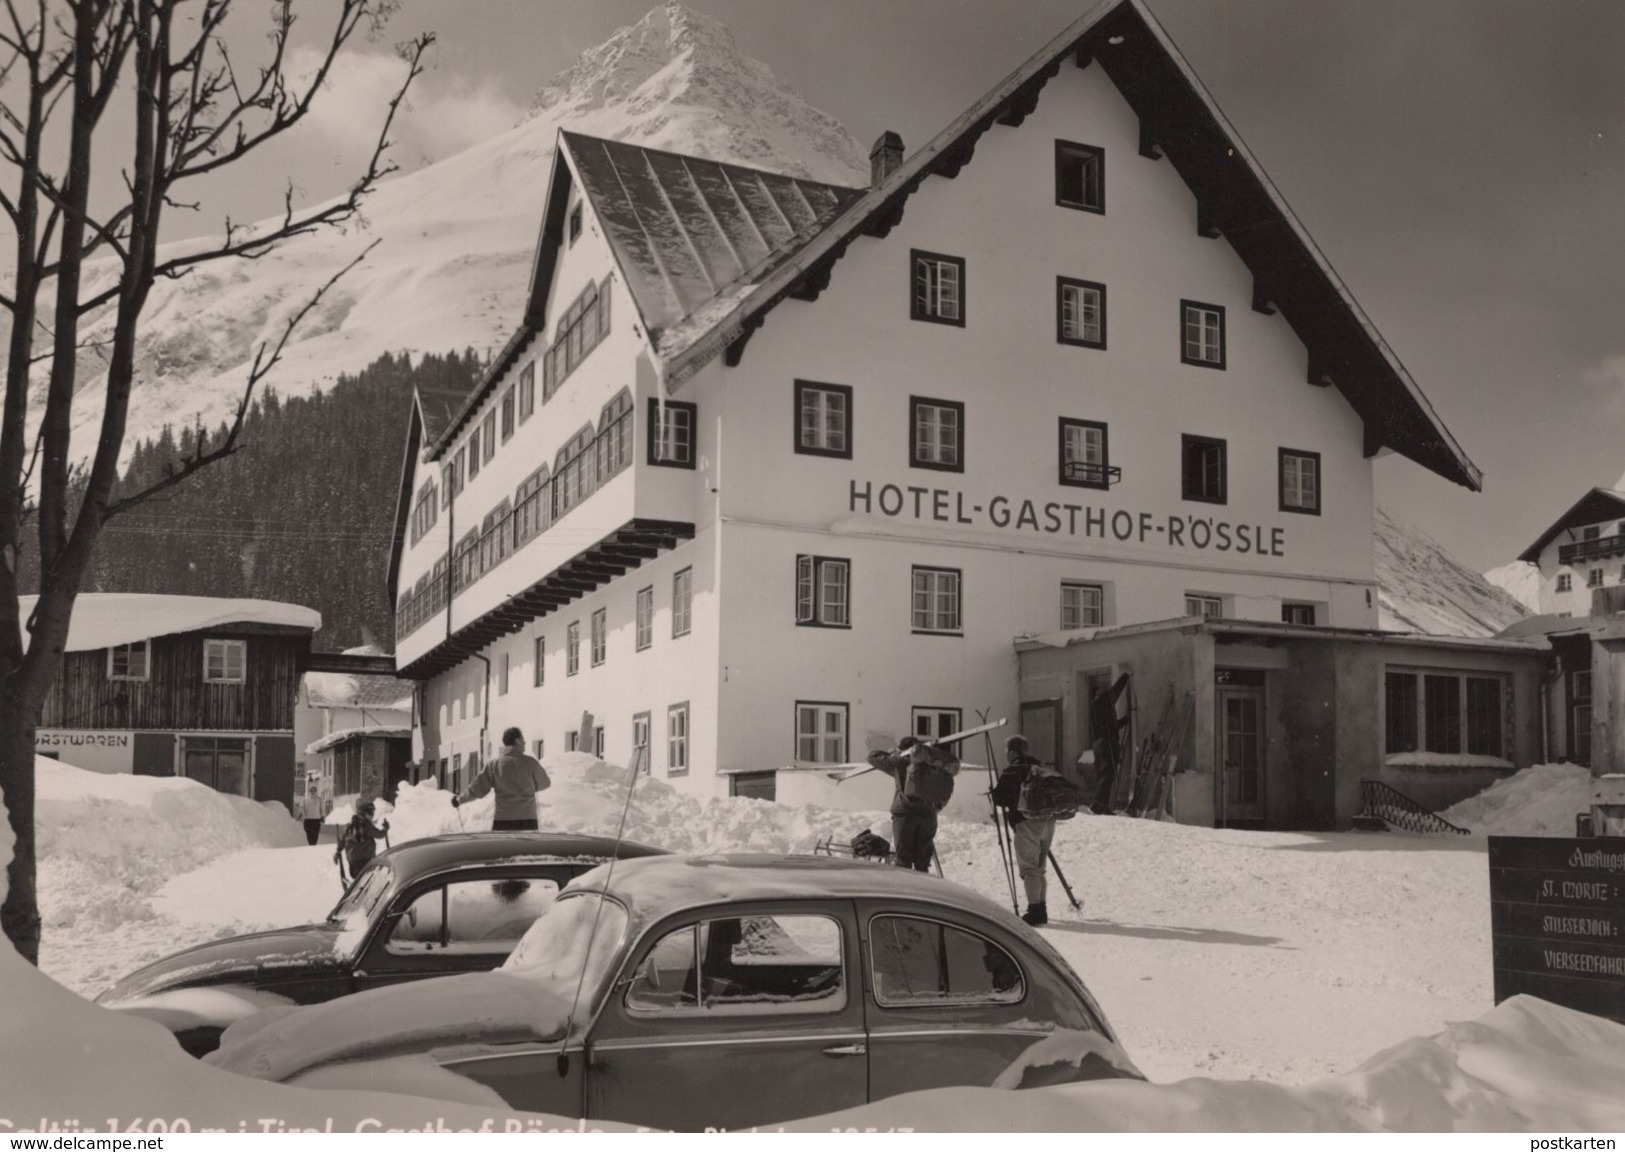 ÄLTERE POSTKARTE GALTÜR 1600 M I. TIROL GASTHOF RÖSSLE Ski Skier Skiing VW Käfer Winter Citroen ? Postcard Ansichtskarte - Galtür